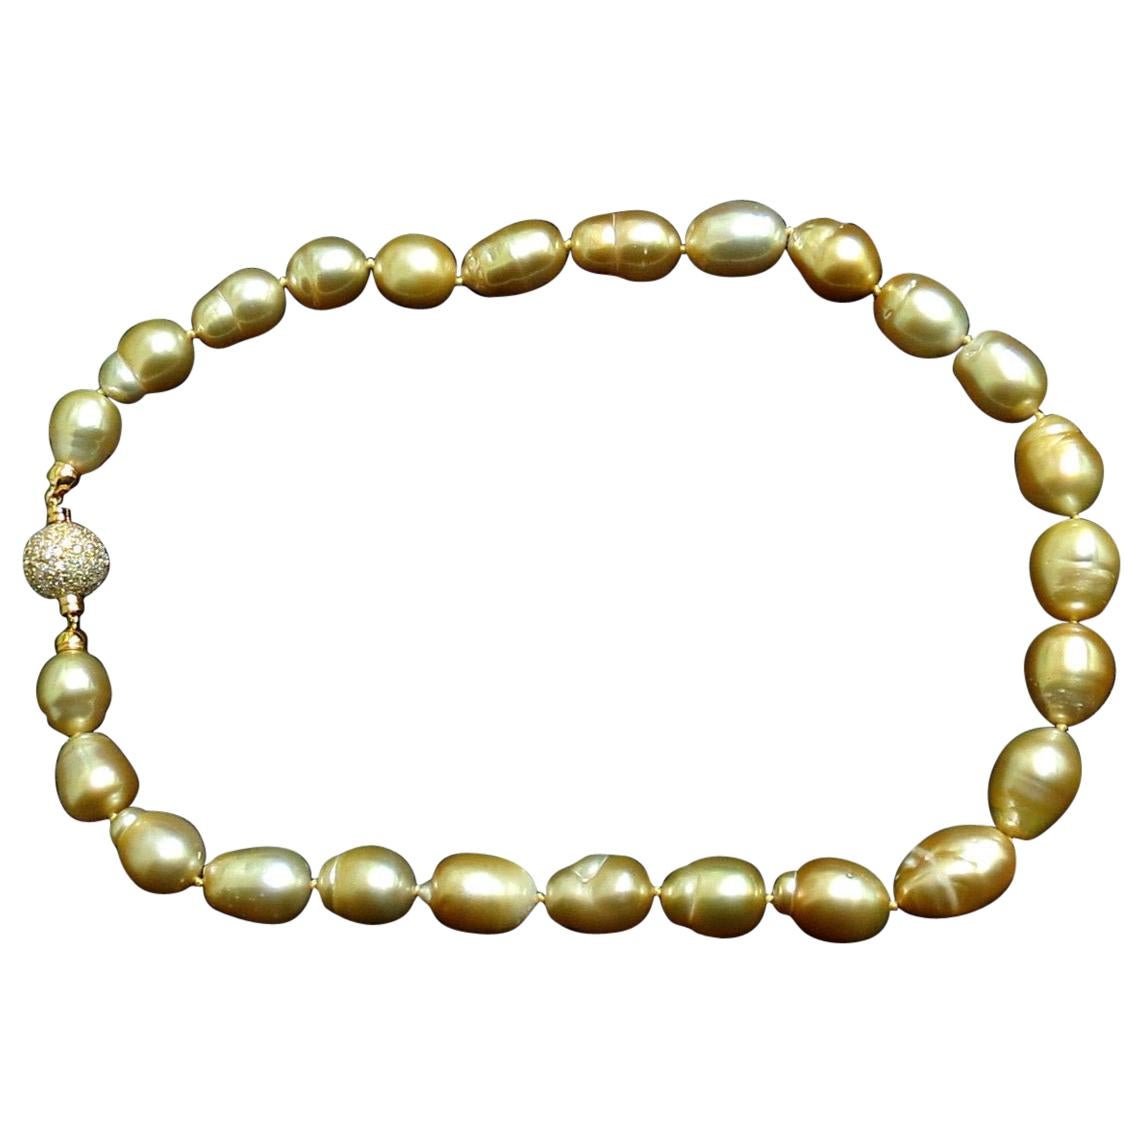 18 Karat Natural South Sea Yellow Pearls Necklace 2.00 Carat Diamond Clasp